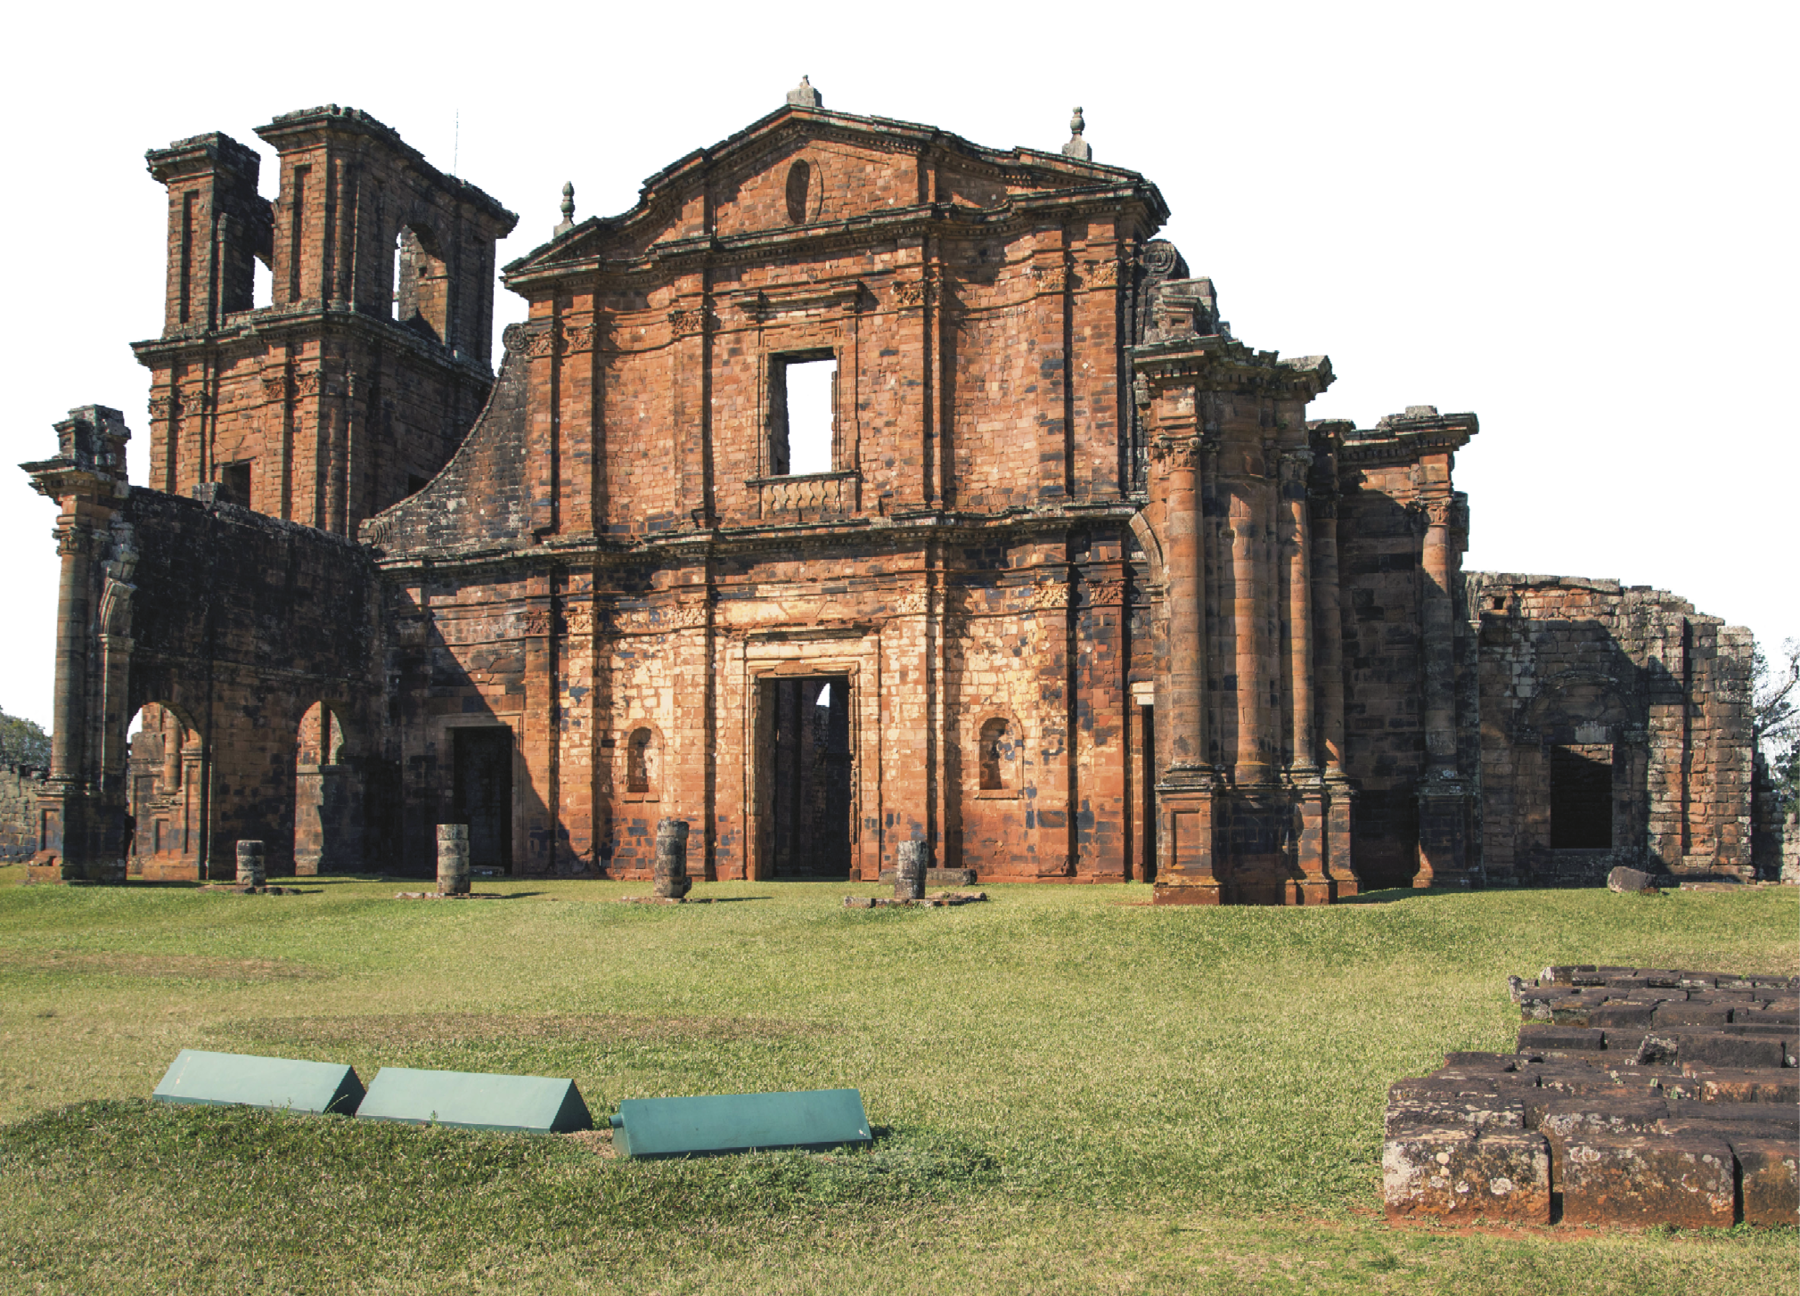 Fotografia. Construção de pedras de cor marrom, formada por colunas nas laterais, à direita, e uma torre quadrada, à esquerda, em meio a um campo plano coberto por grama verde.